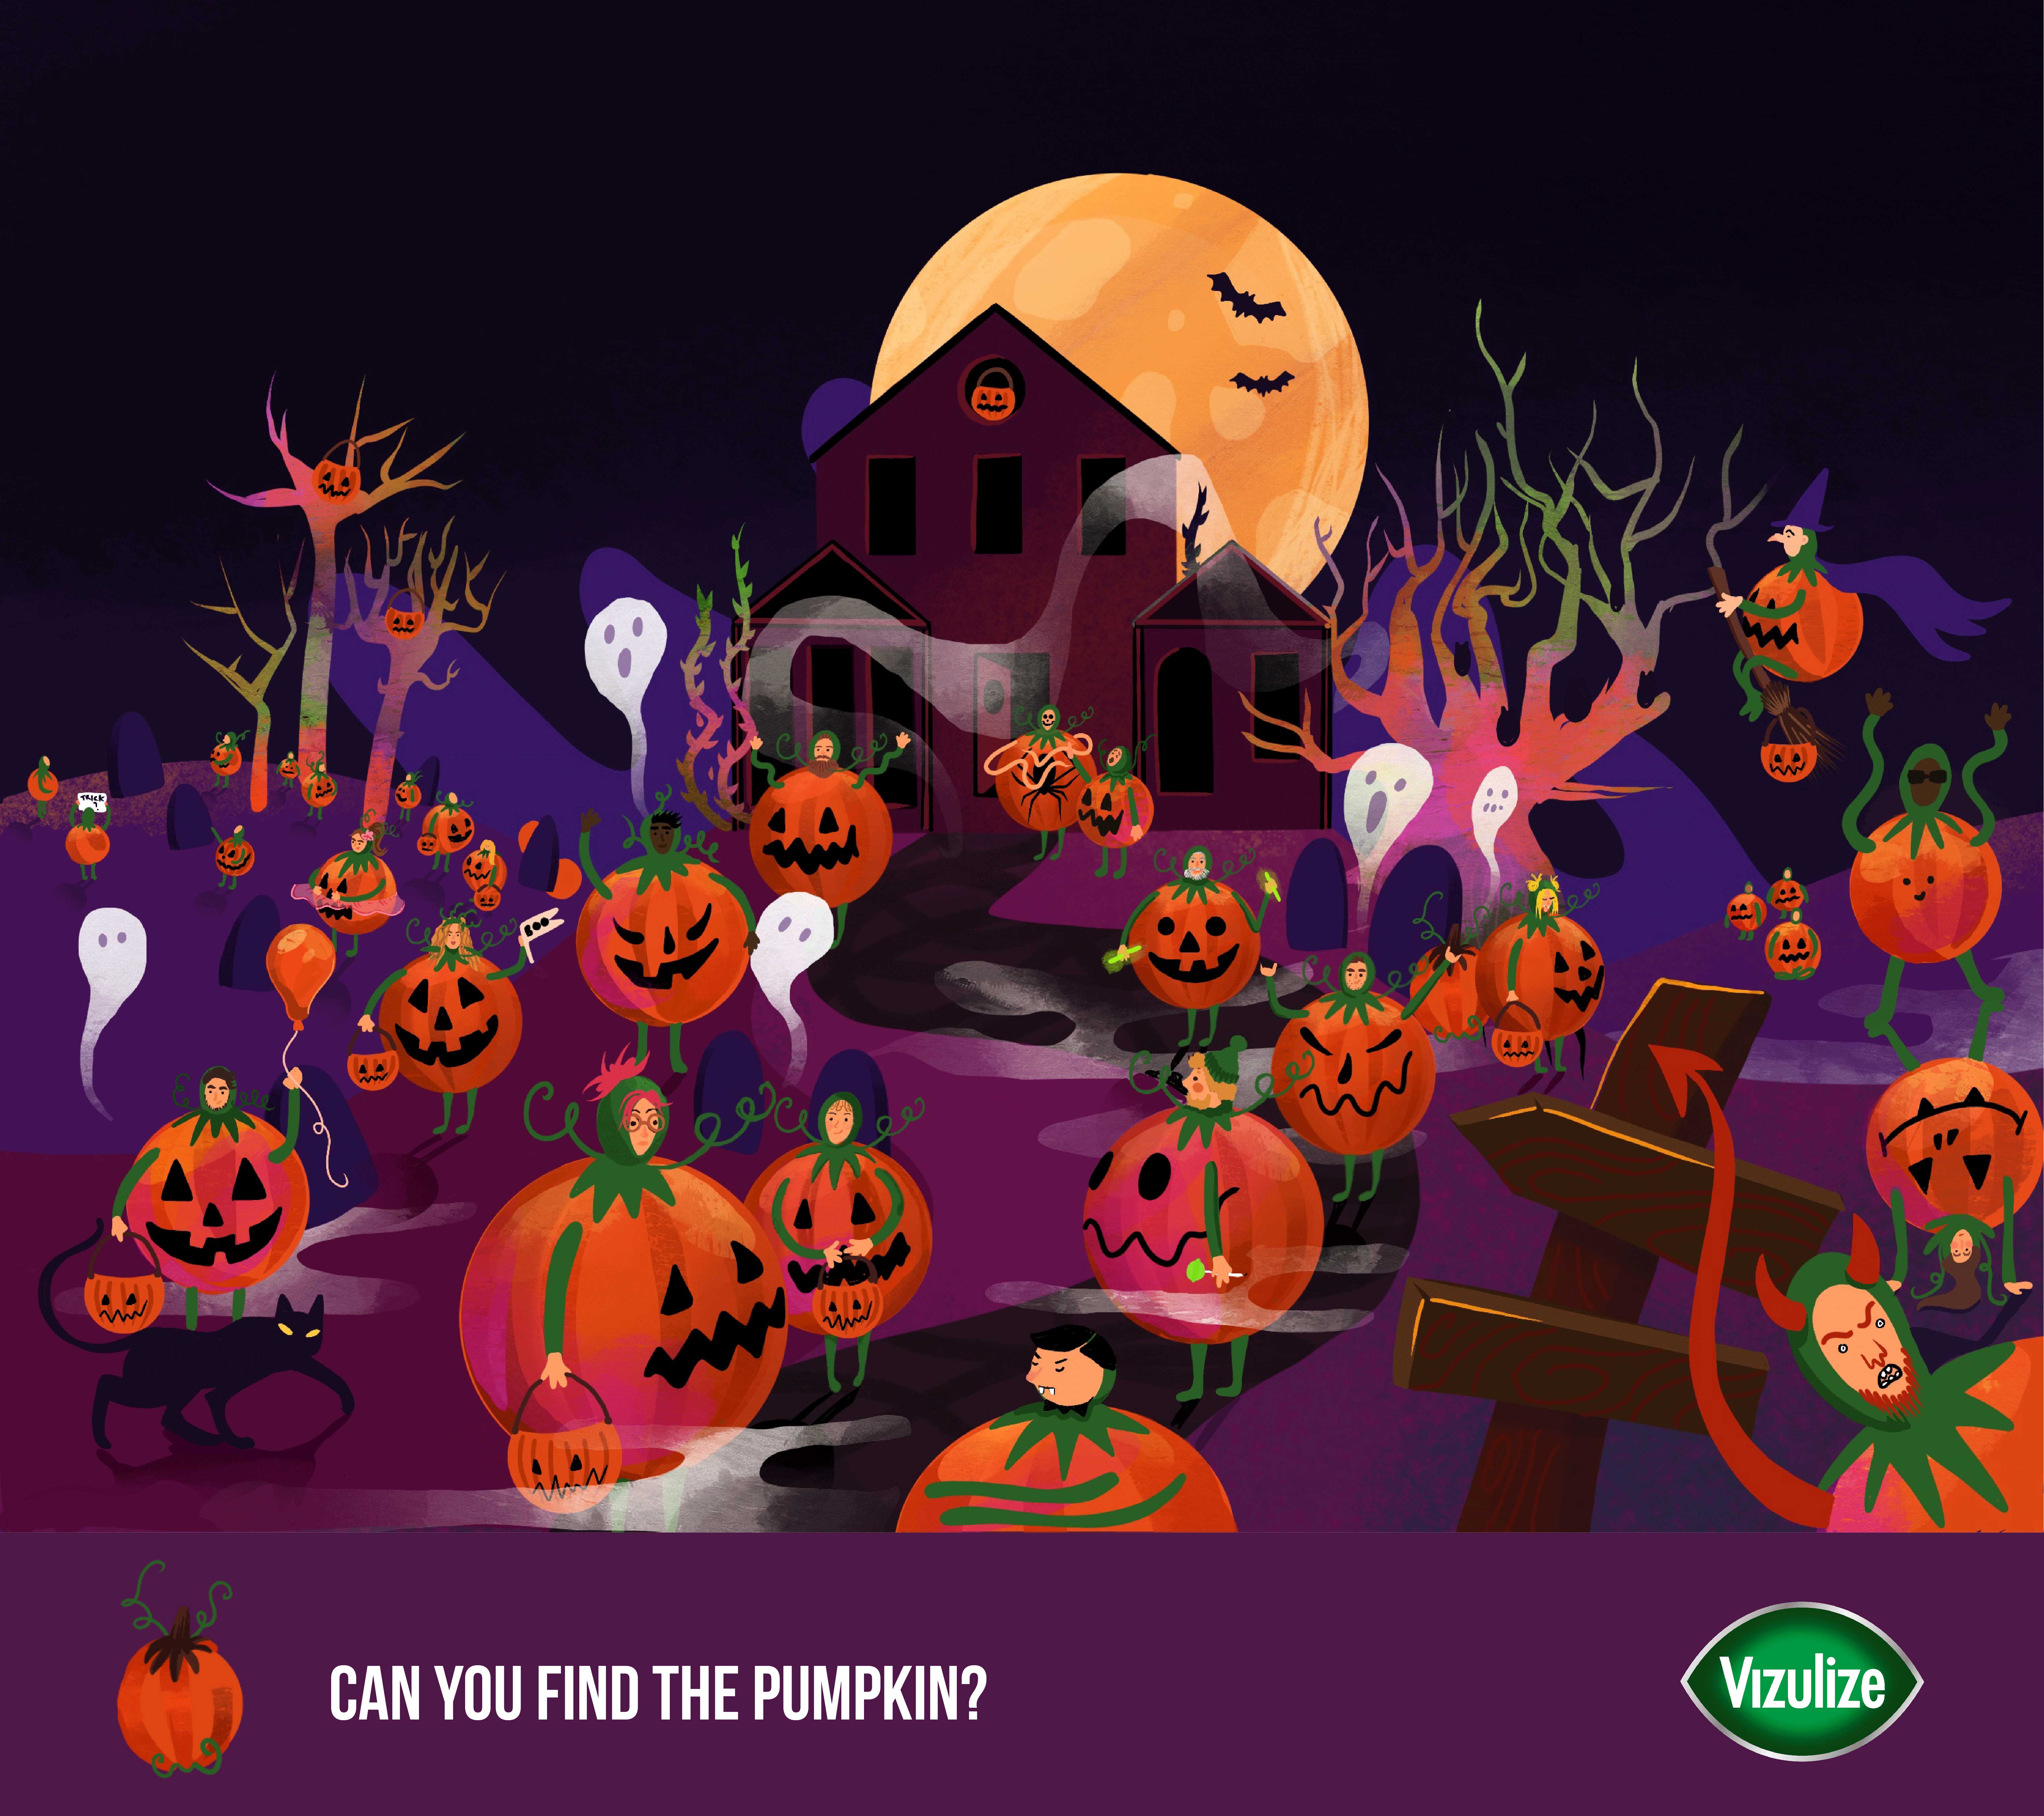 "Find The Hidden Pumpkin" Graphic